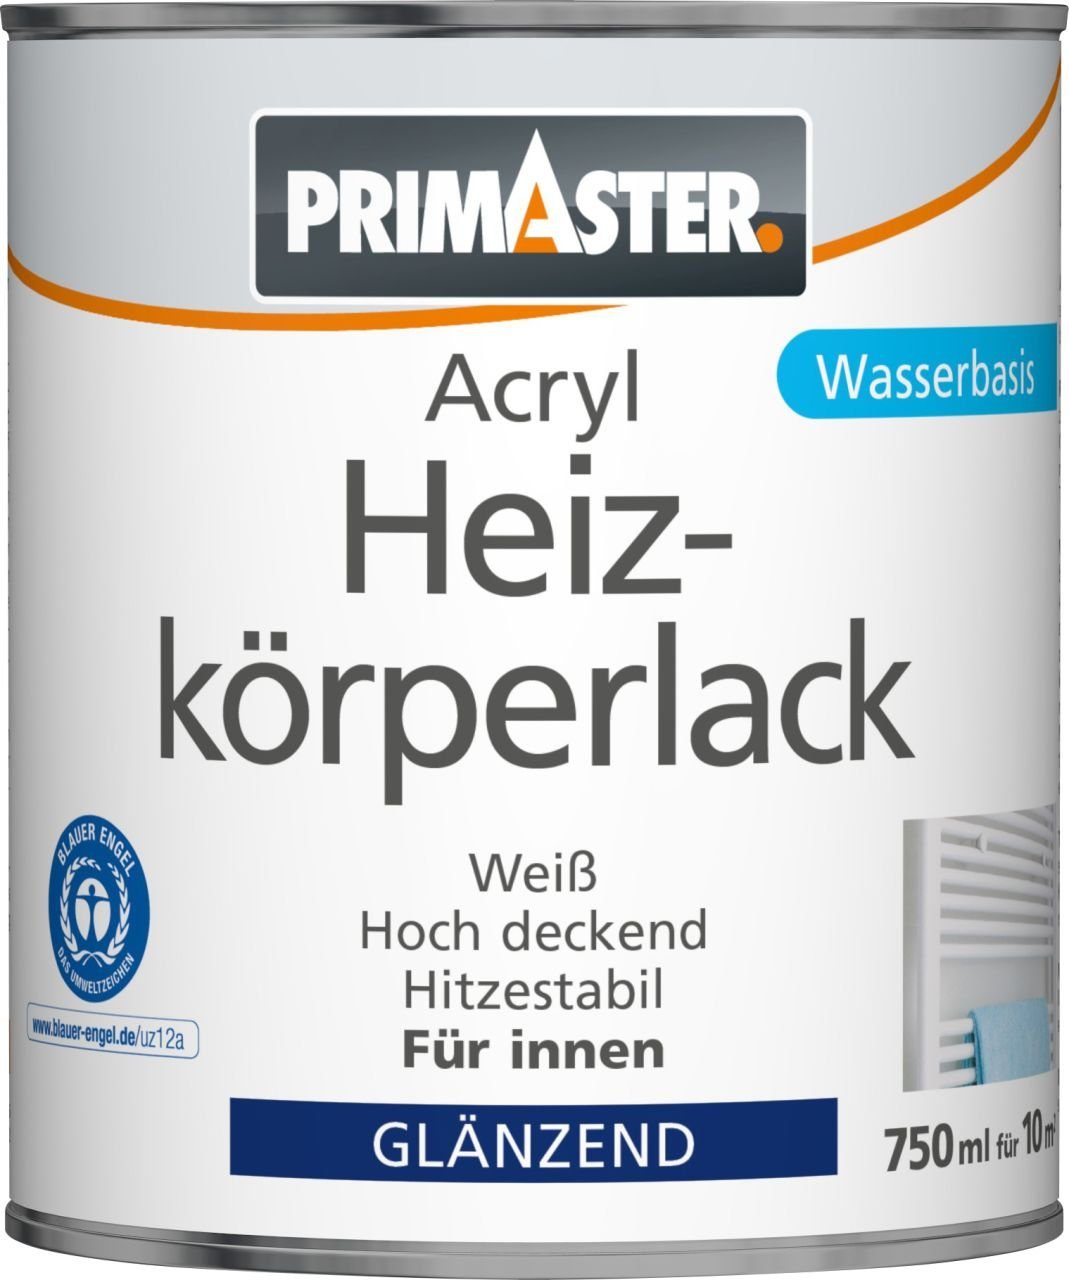 Heizkörperlack 750 Primaster Acryl Primaster ml Heizkörperlack weiß